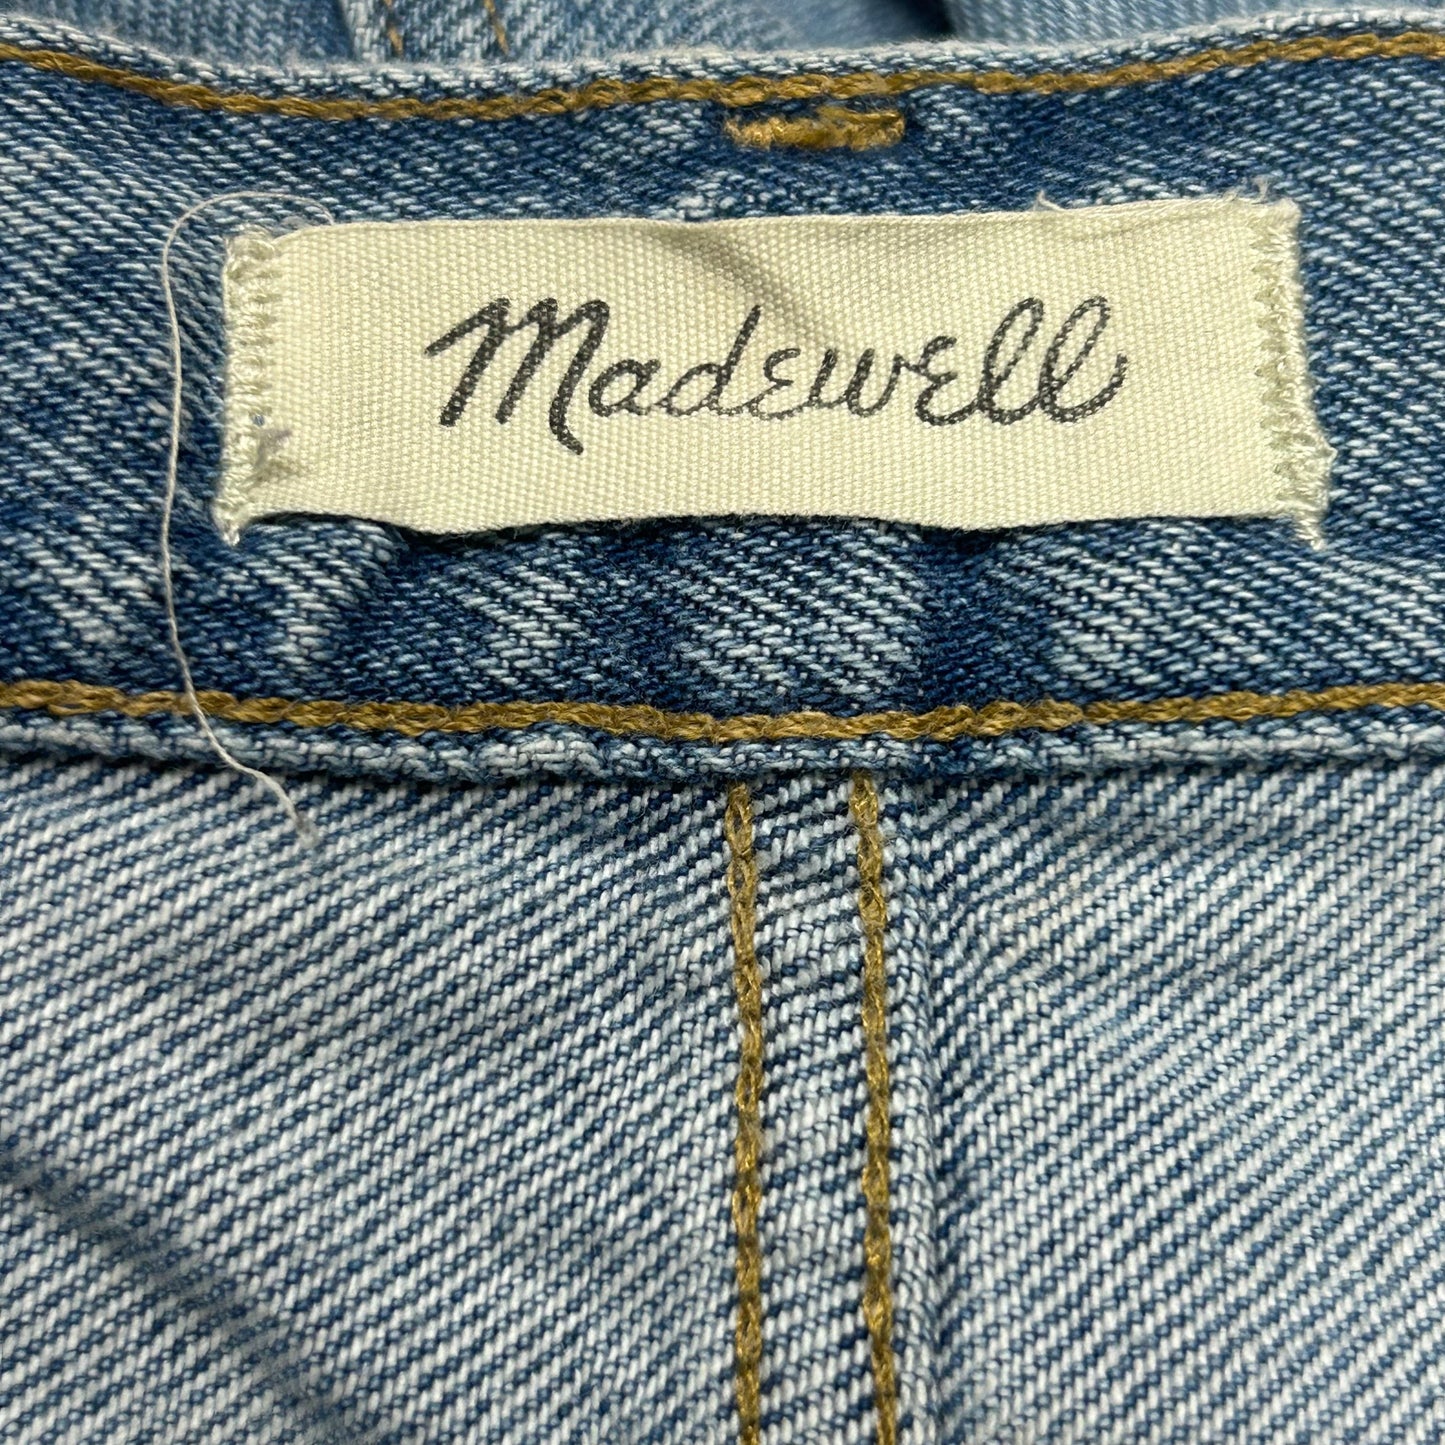 Blue Denim Jeans Boyfriend By Madewell, Size: 20